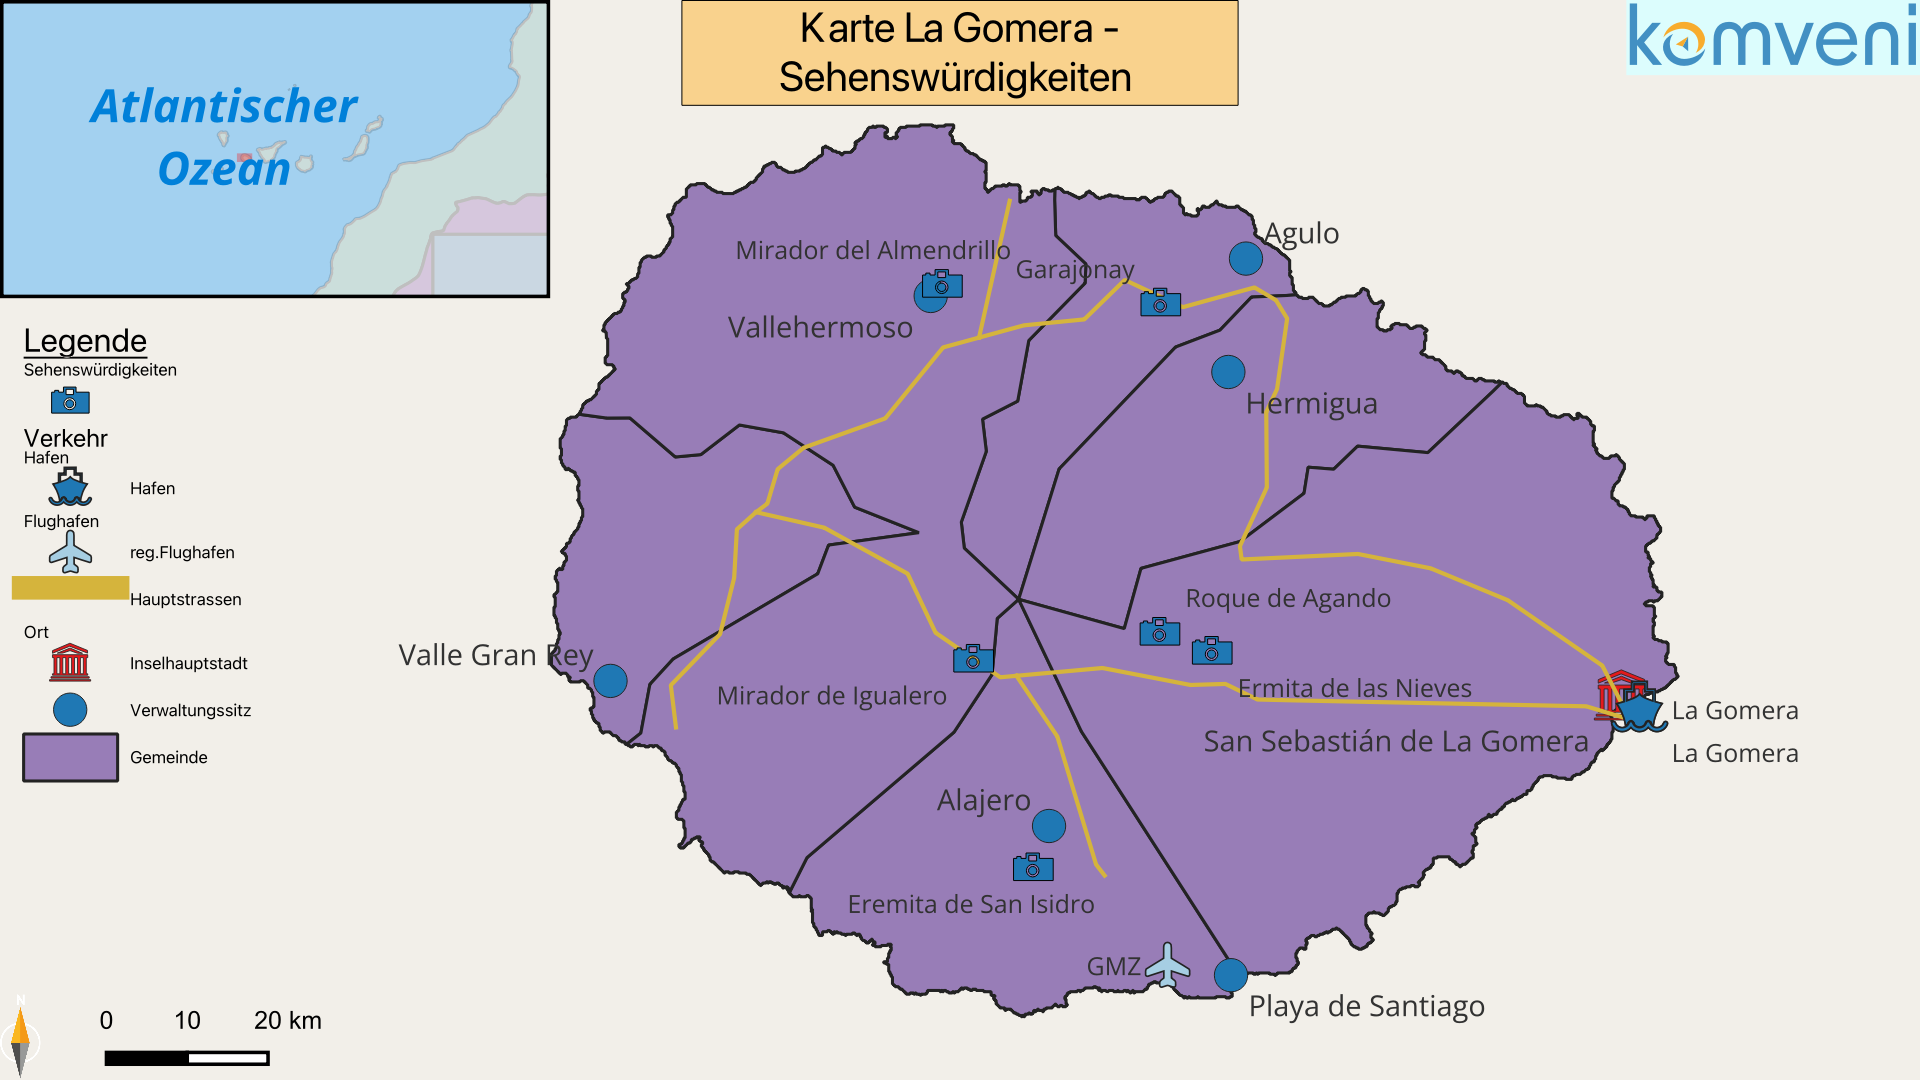 Karte La Gomera Sehenswürdigkeiten